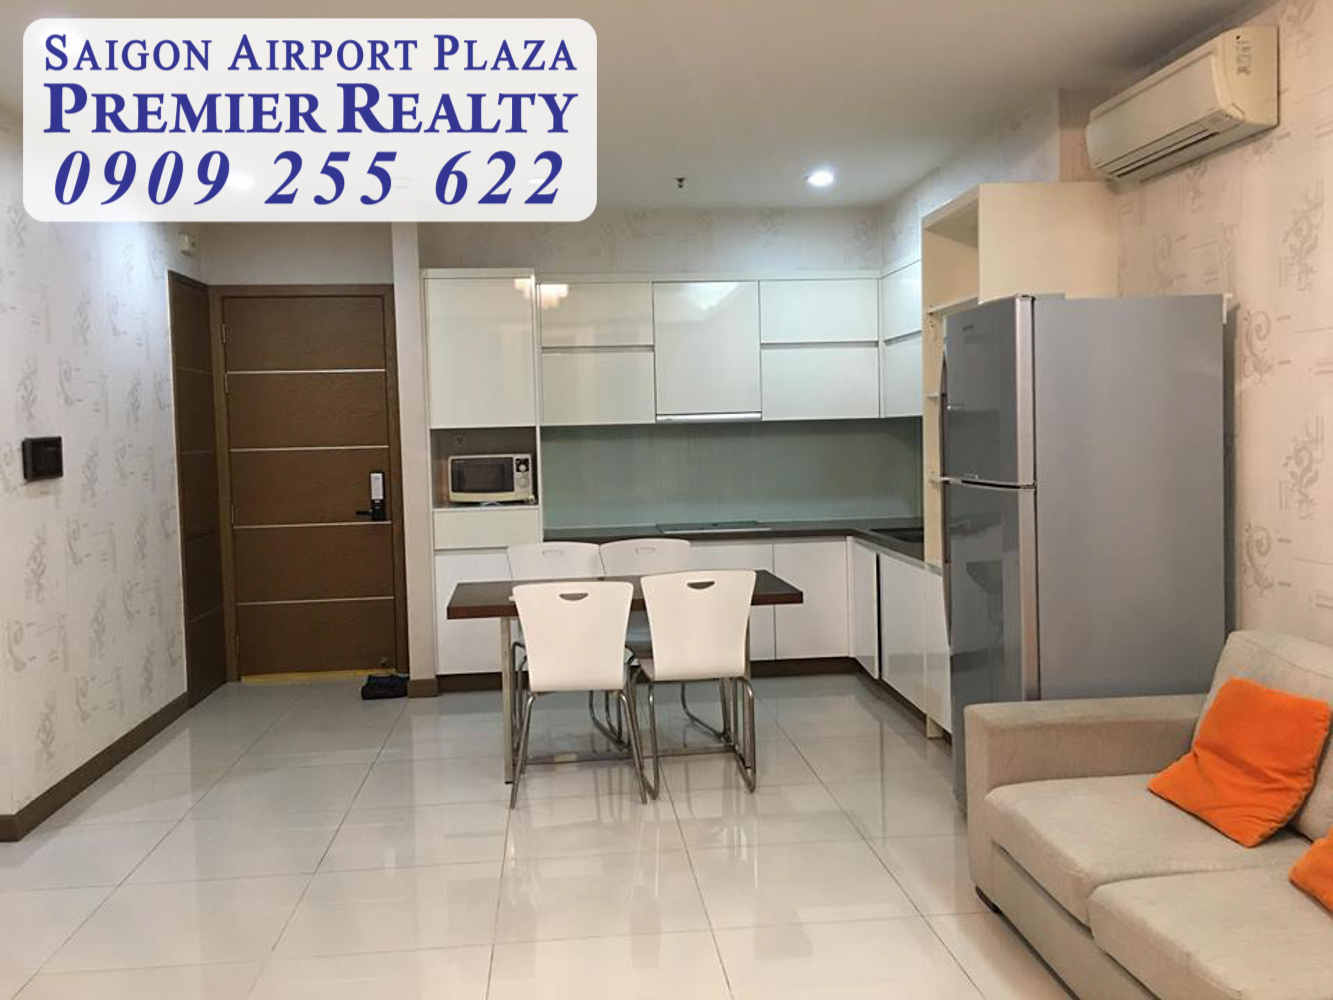 Saigon Airport Plaza - Quản lý toàn bộ giỏ hàng 1-2-3PN, xem nhà ngay. Hotline PKD 0909 255 622